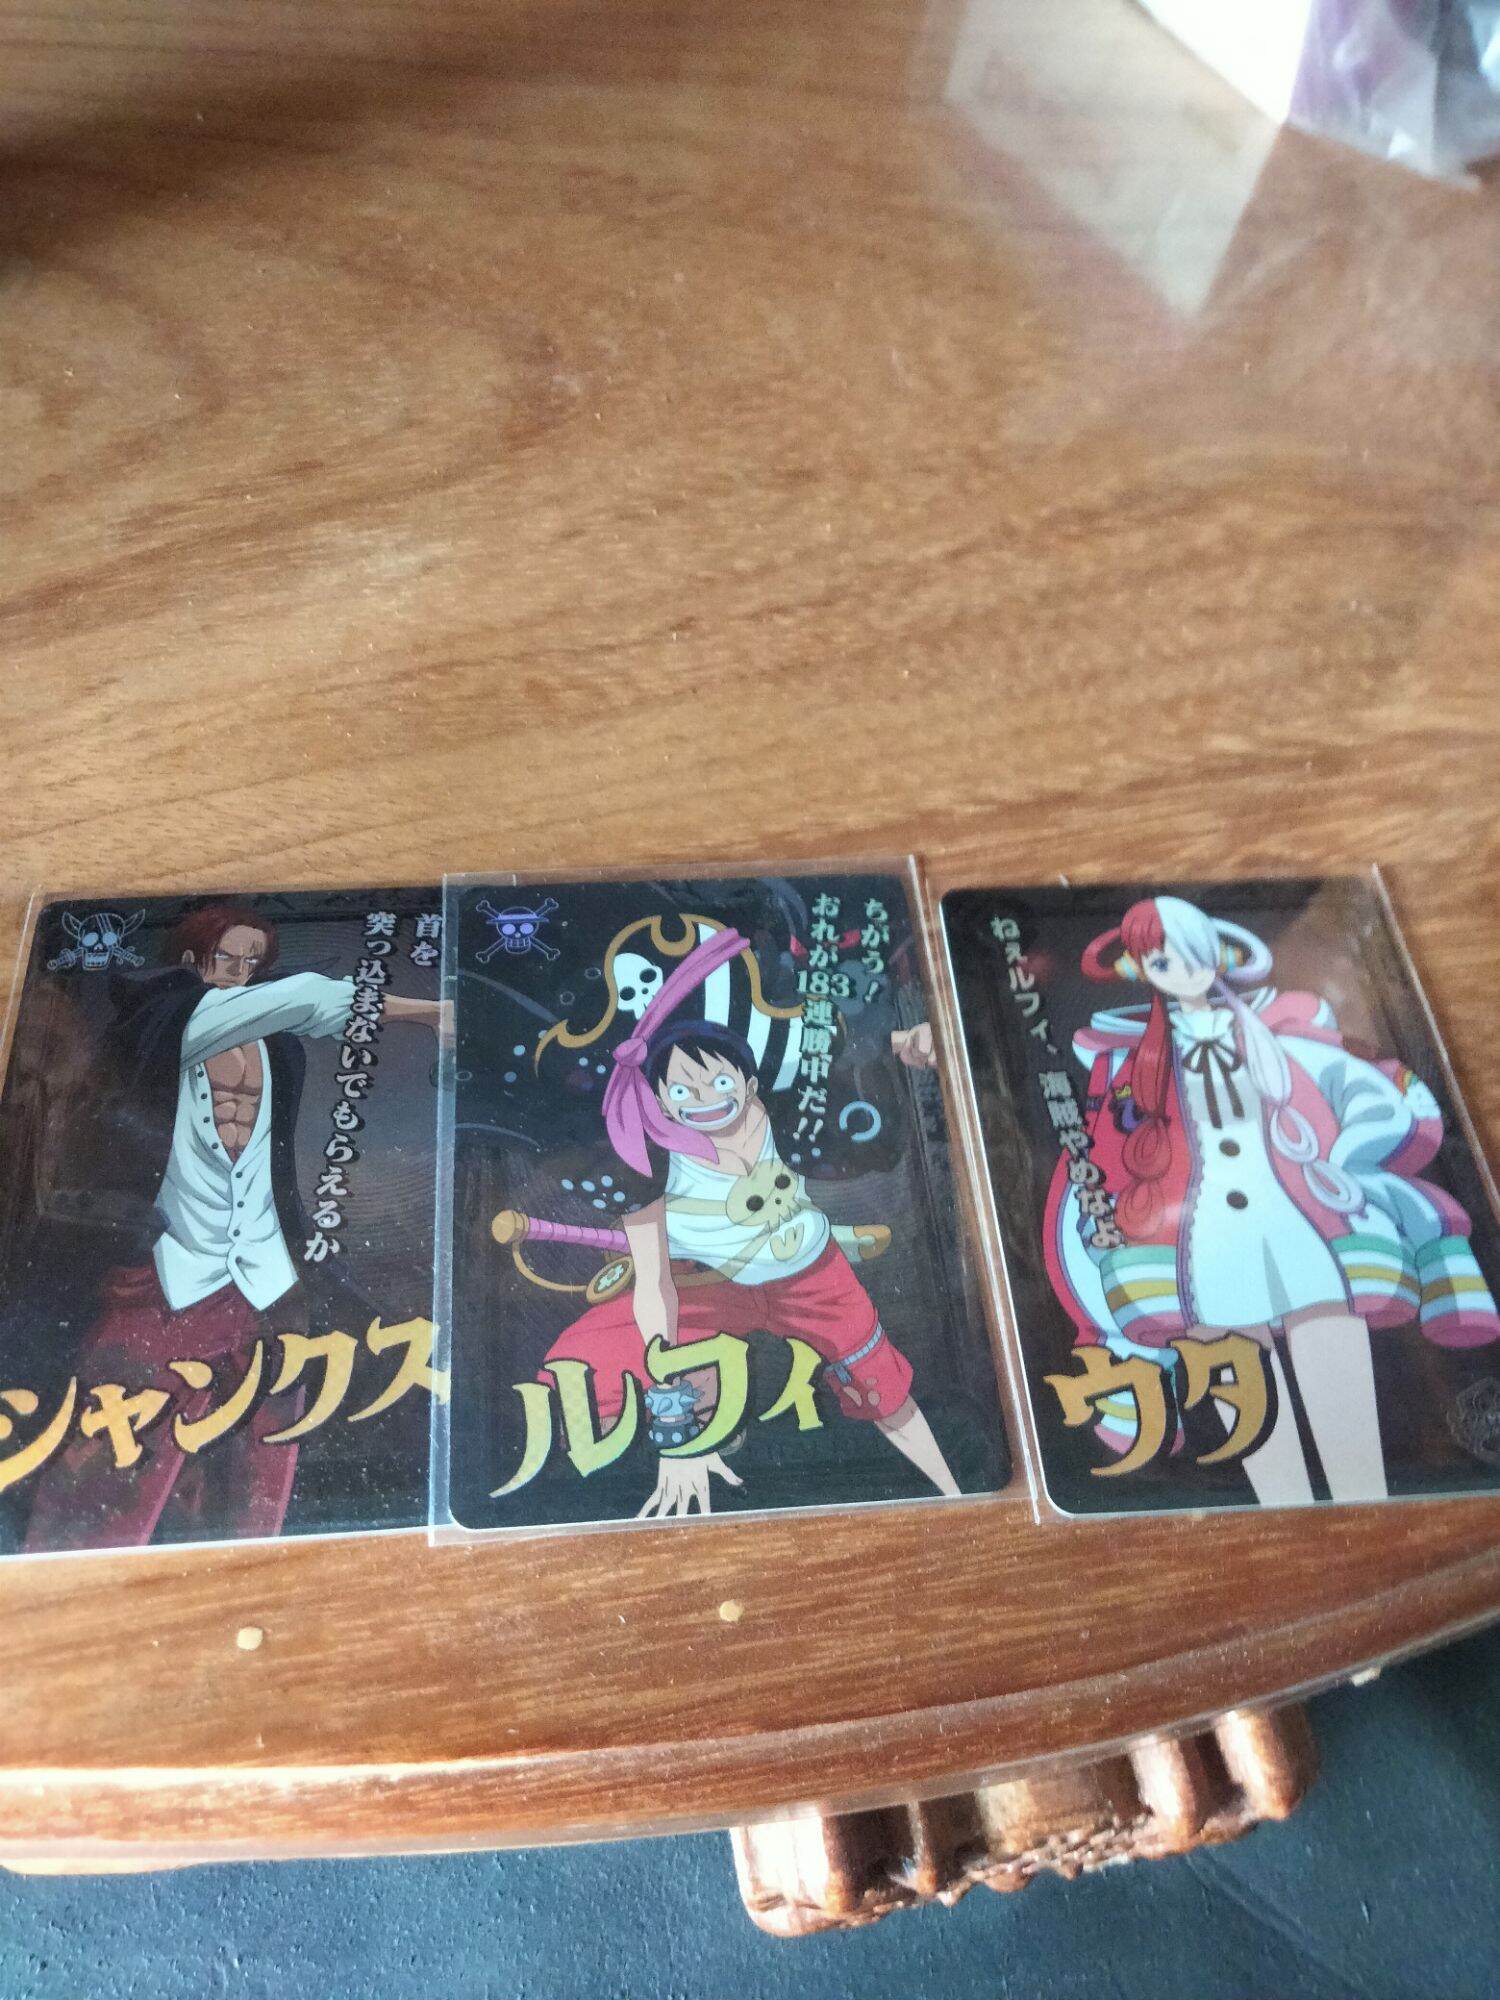 Bộ 3 thẻ One Piece CGV Ultra rare siêu hiếm